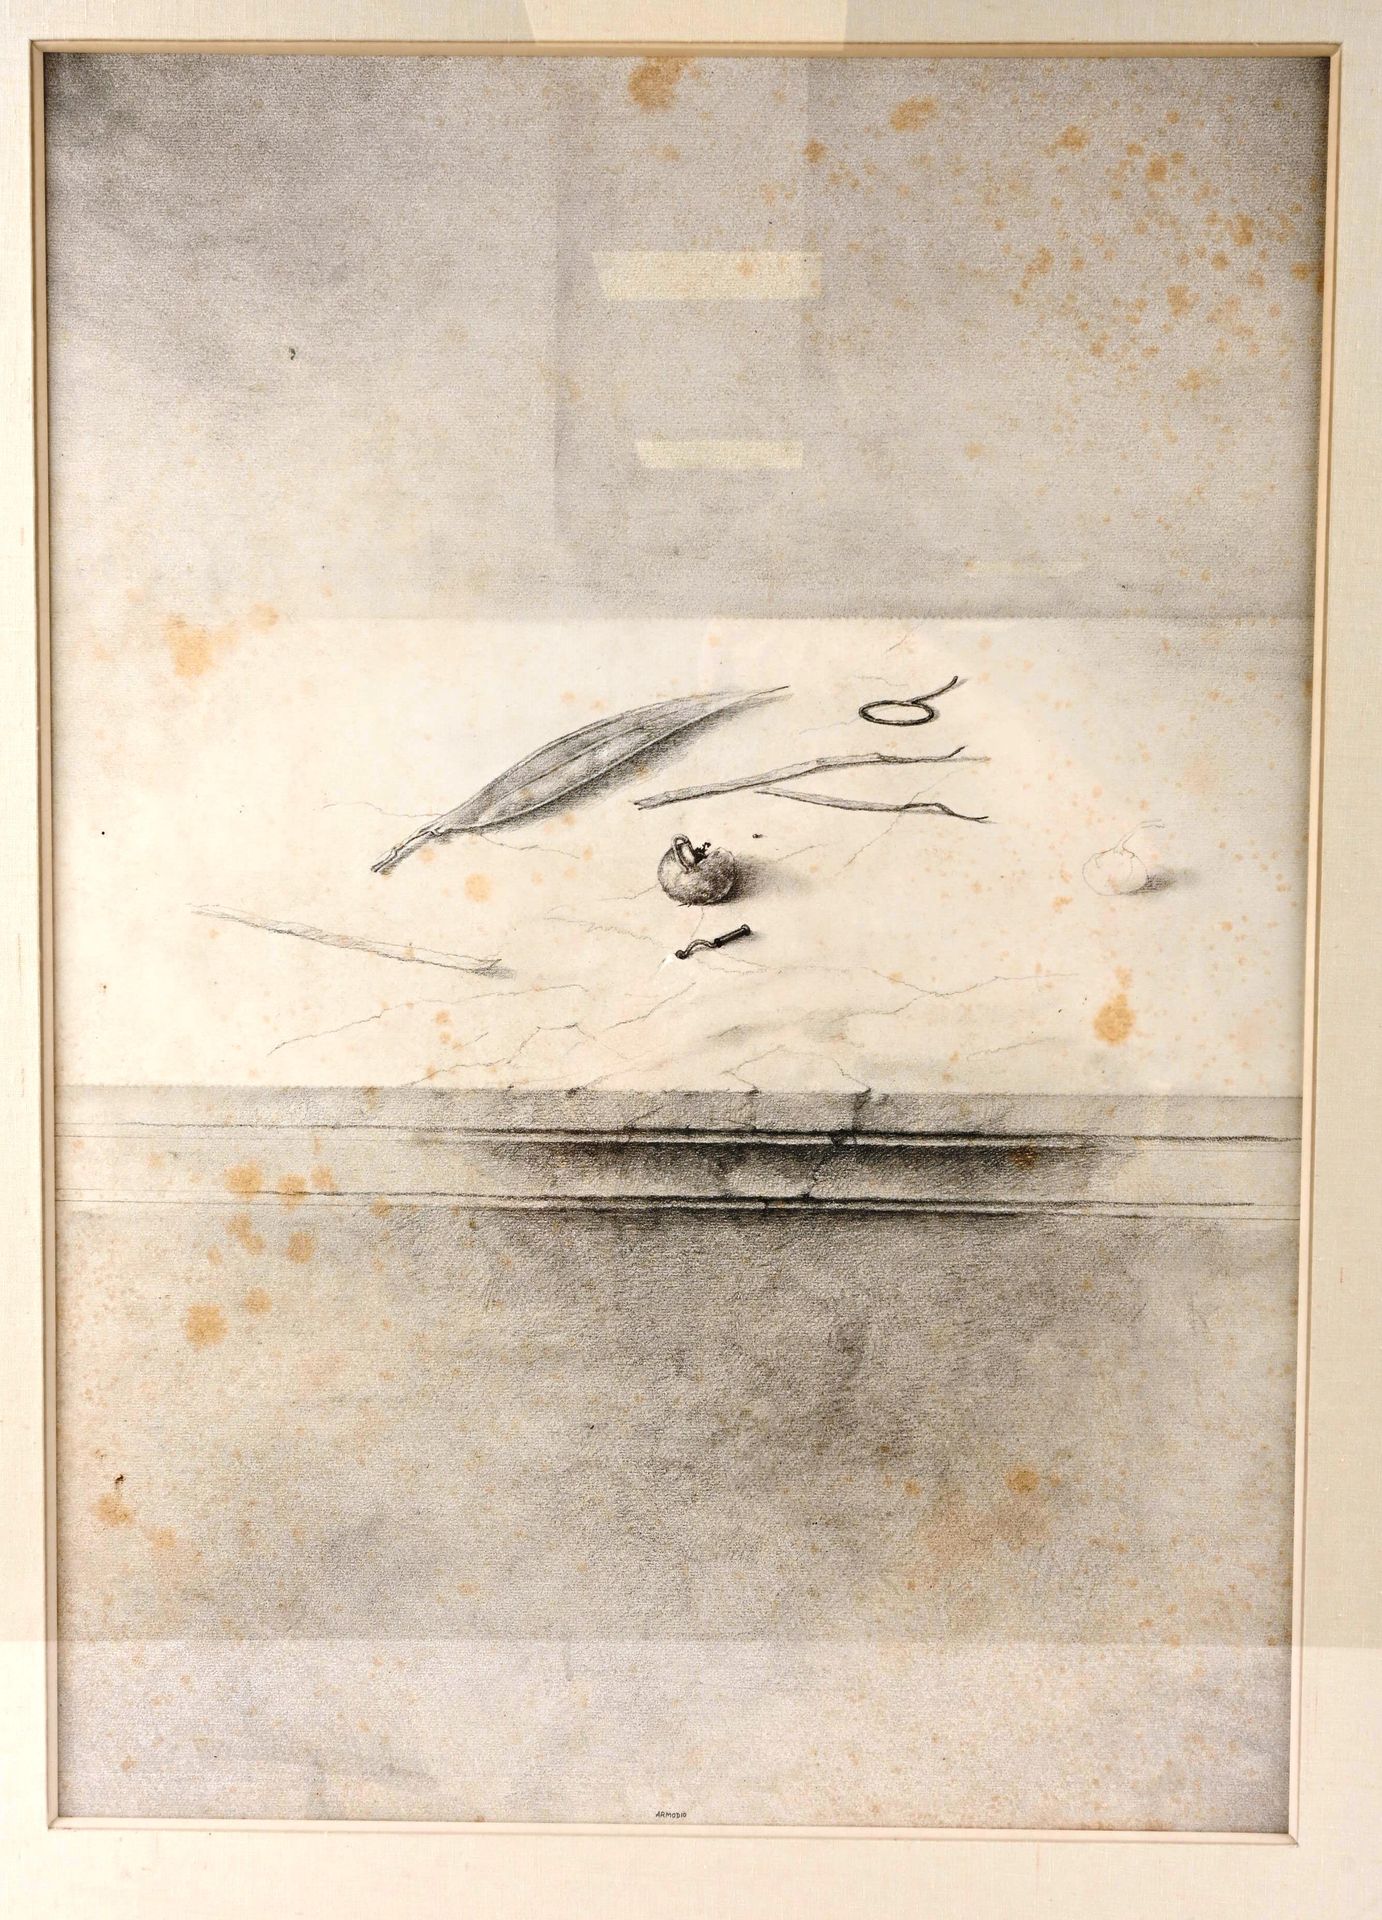 ARMODIO (1938) 阿莫迪奥 (1938)

"静物"。

纸上混合媒体，中间底部有签名。

褪色。

尺寸：68厘米 x 48厘米